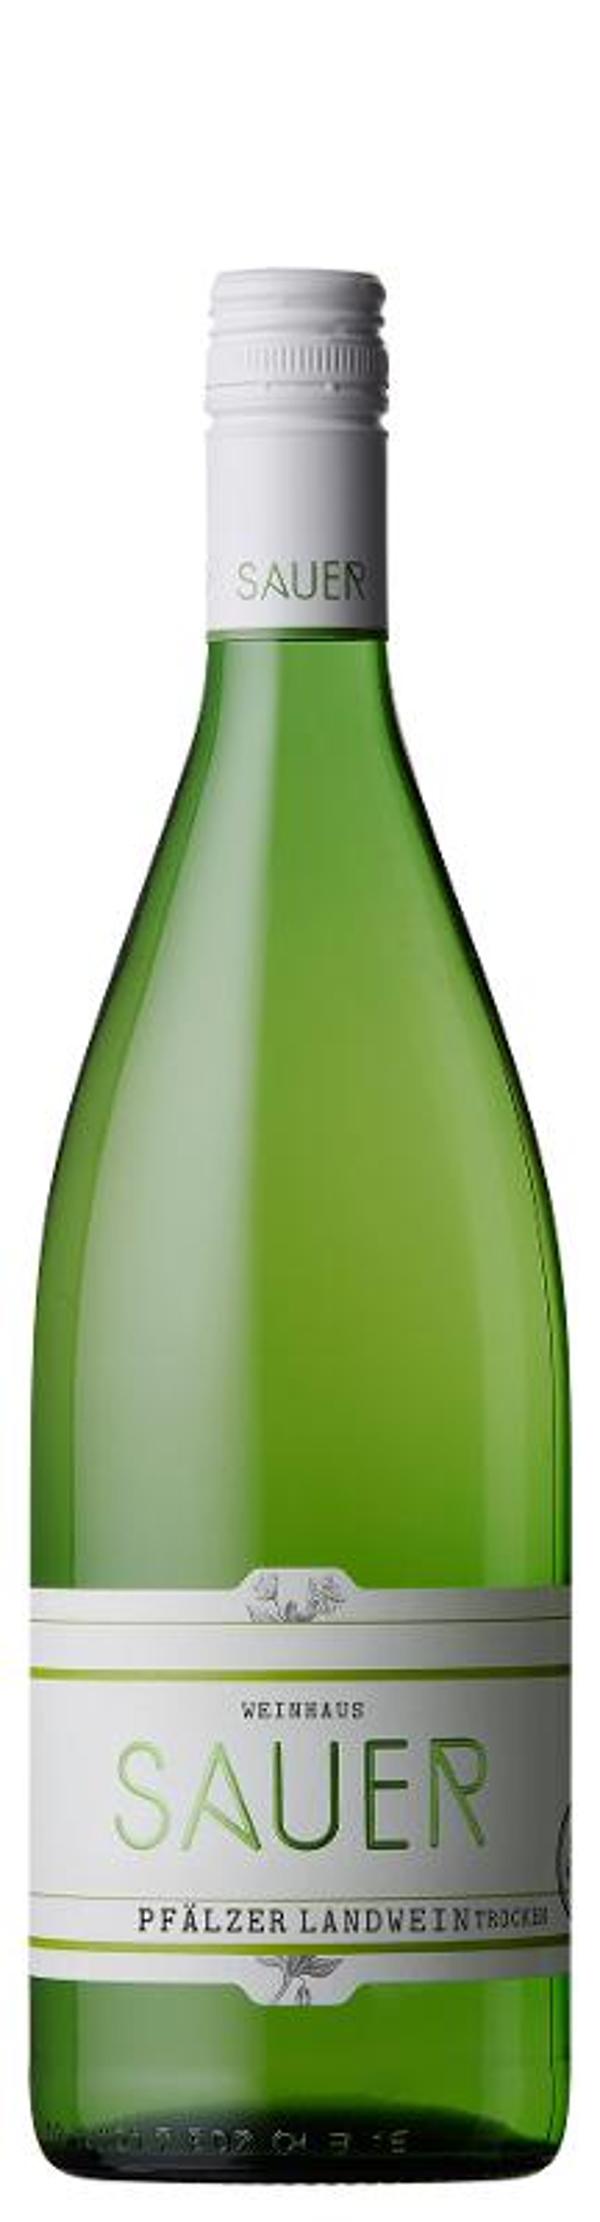 Produktfoto zu Kiste Pfälzer Landwein 6 x1,0L